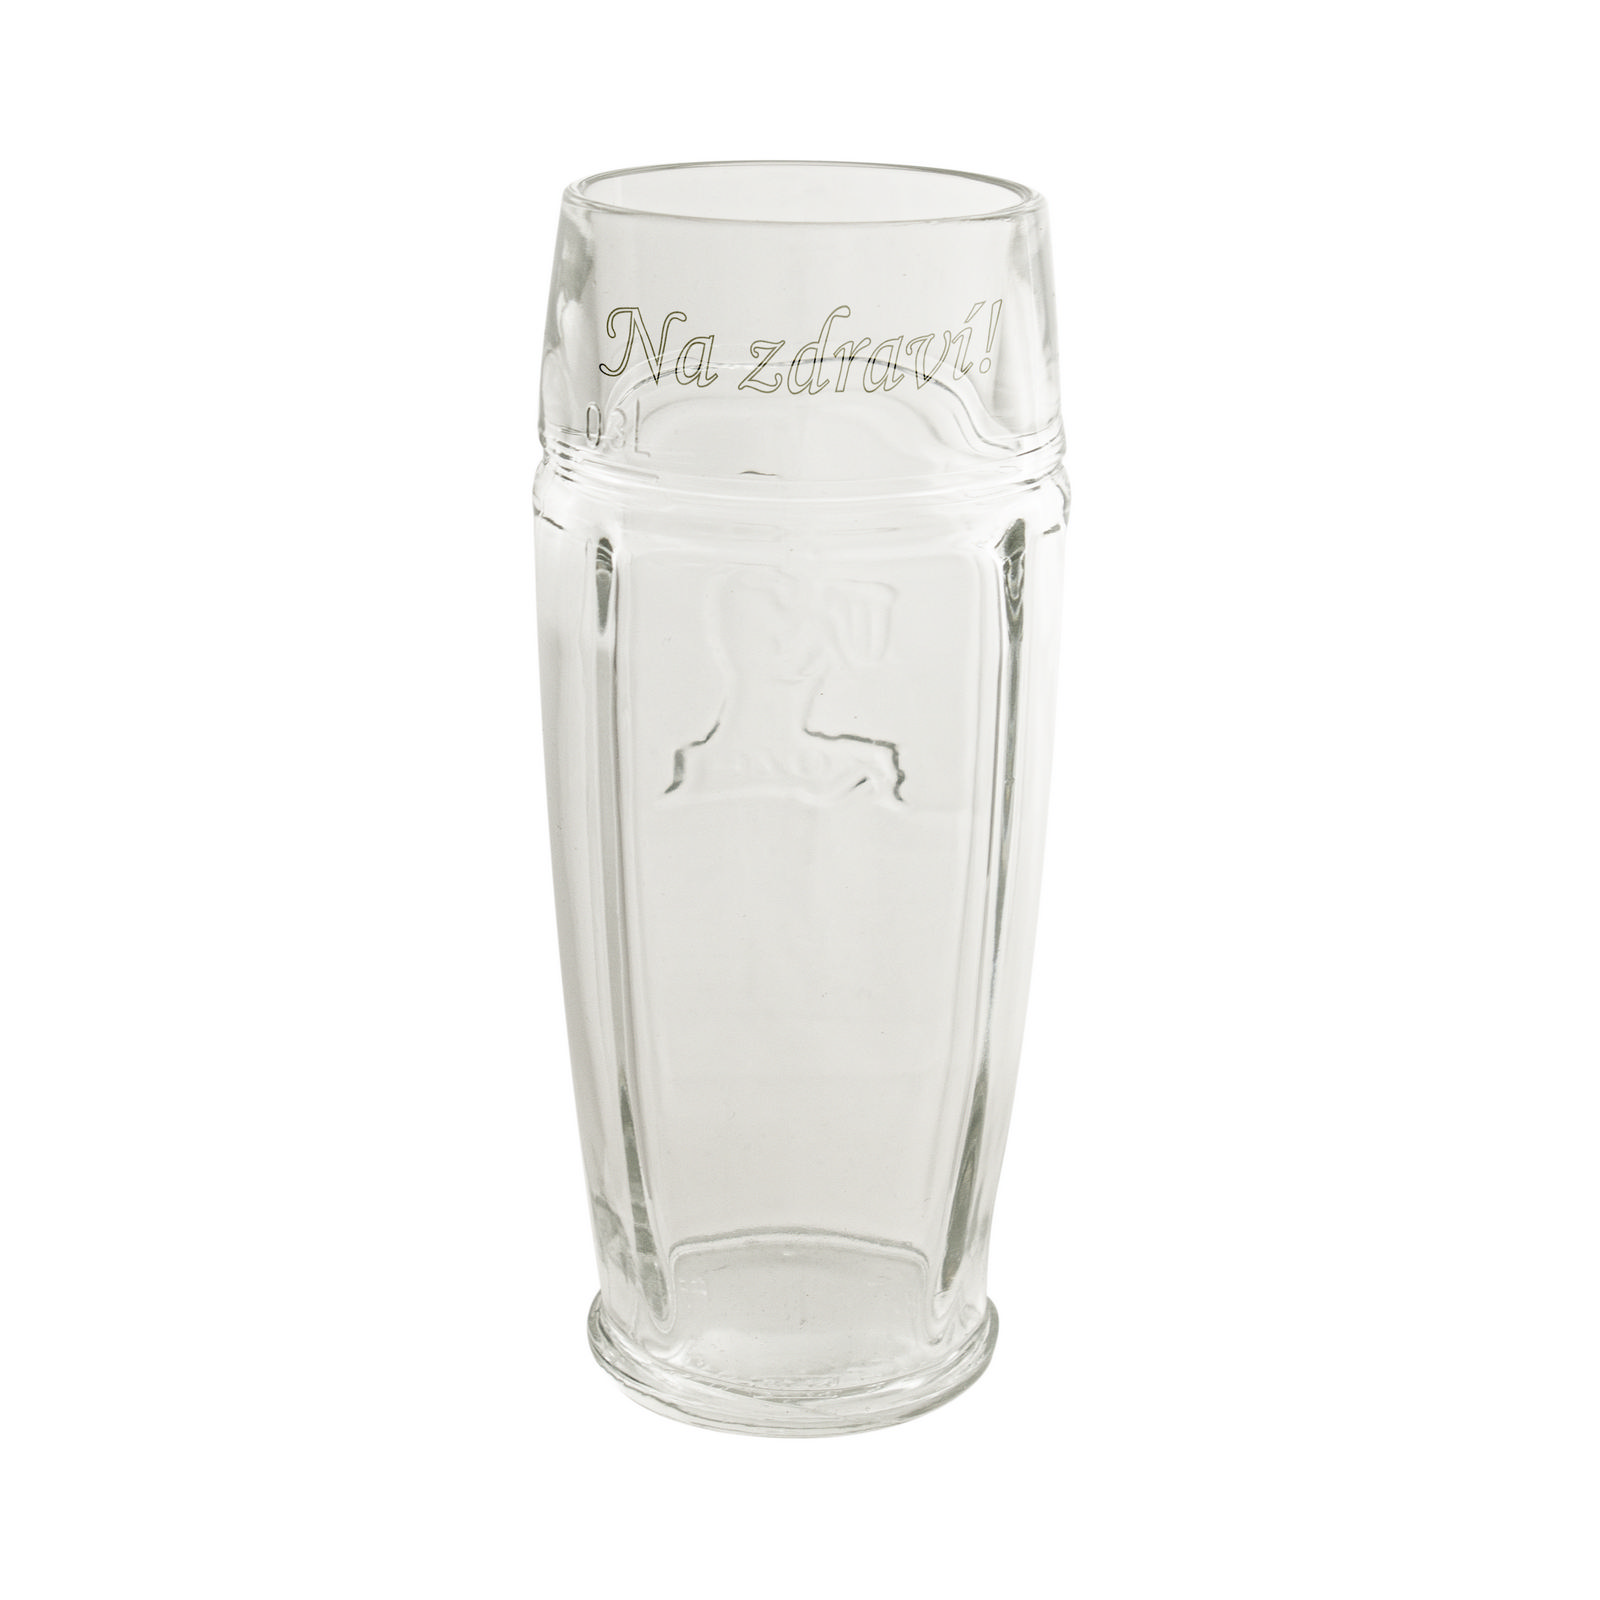 Kozel 0.3L glass with inscription